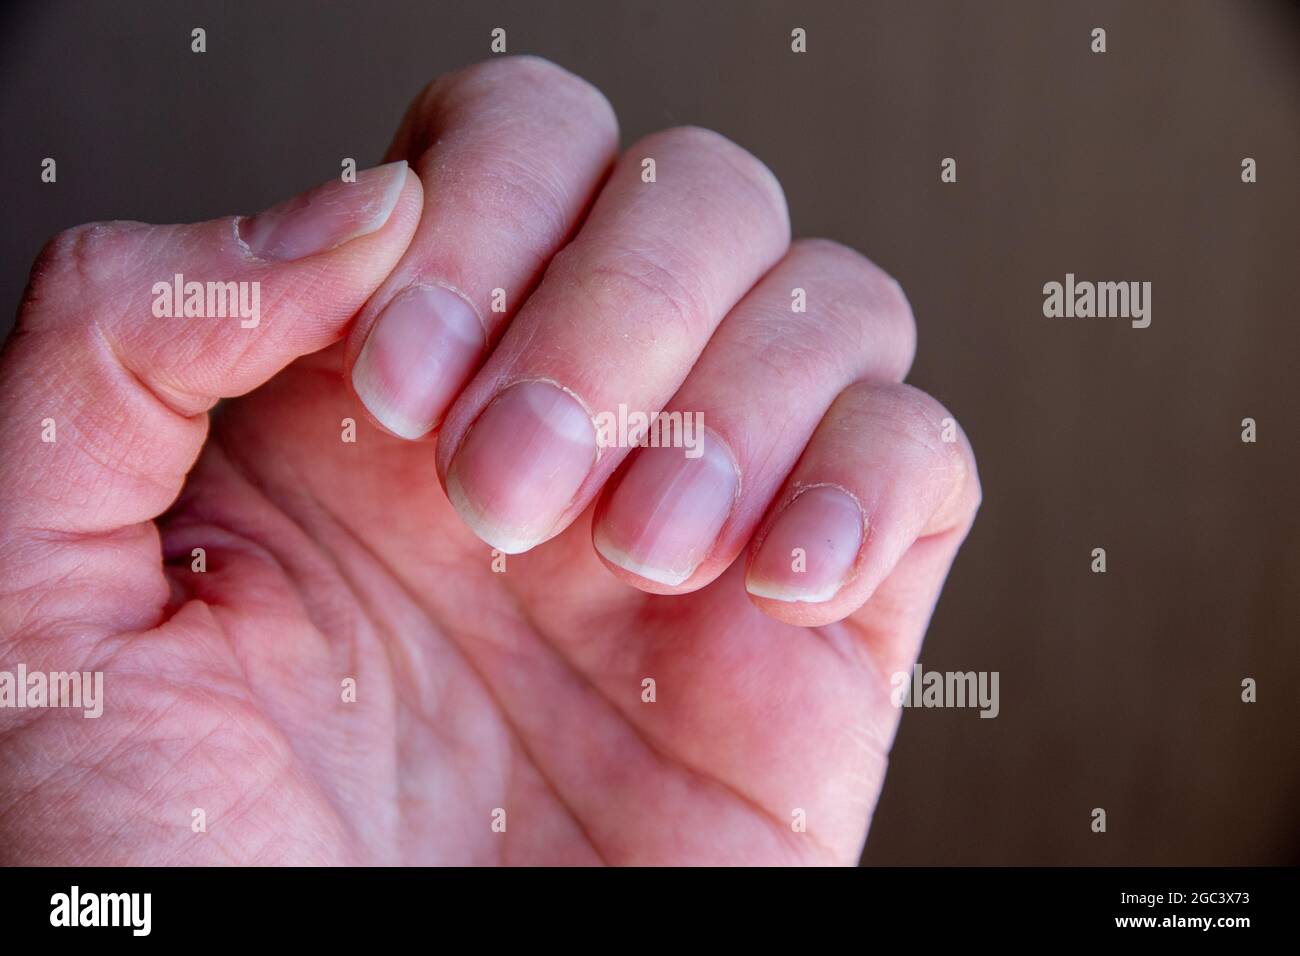 Gros plan des ongles féminins après une mauvaise manucure sur fond marron. Ongles trop gros et plaque à ongles endommagée. Concept de santé et de soins Banque D'Images